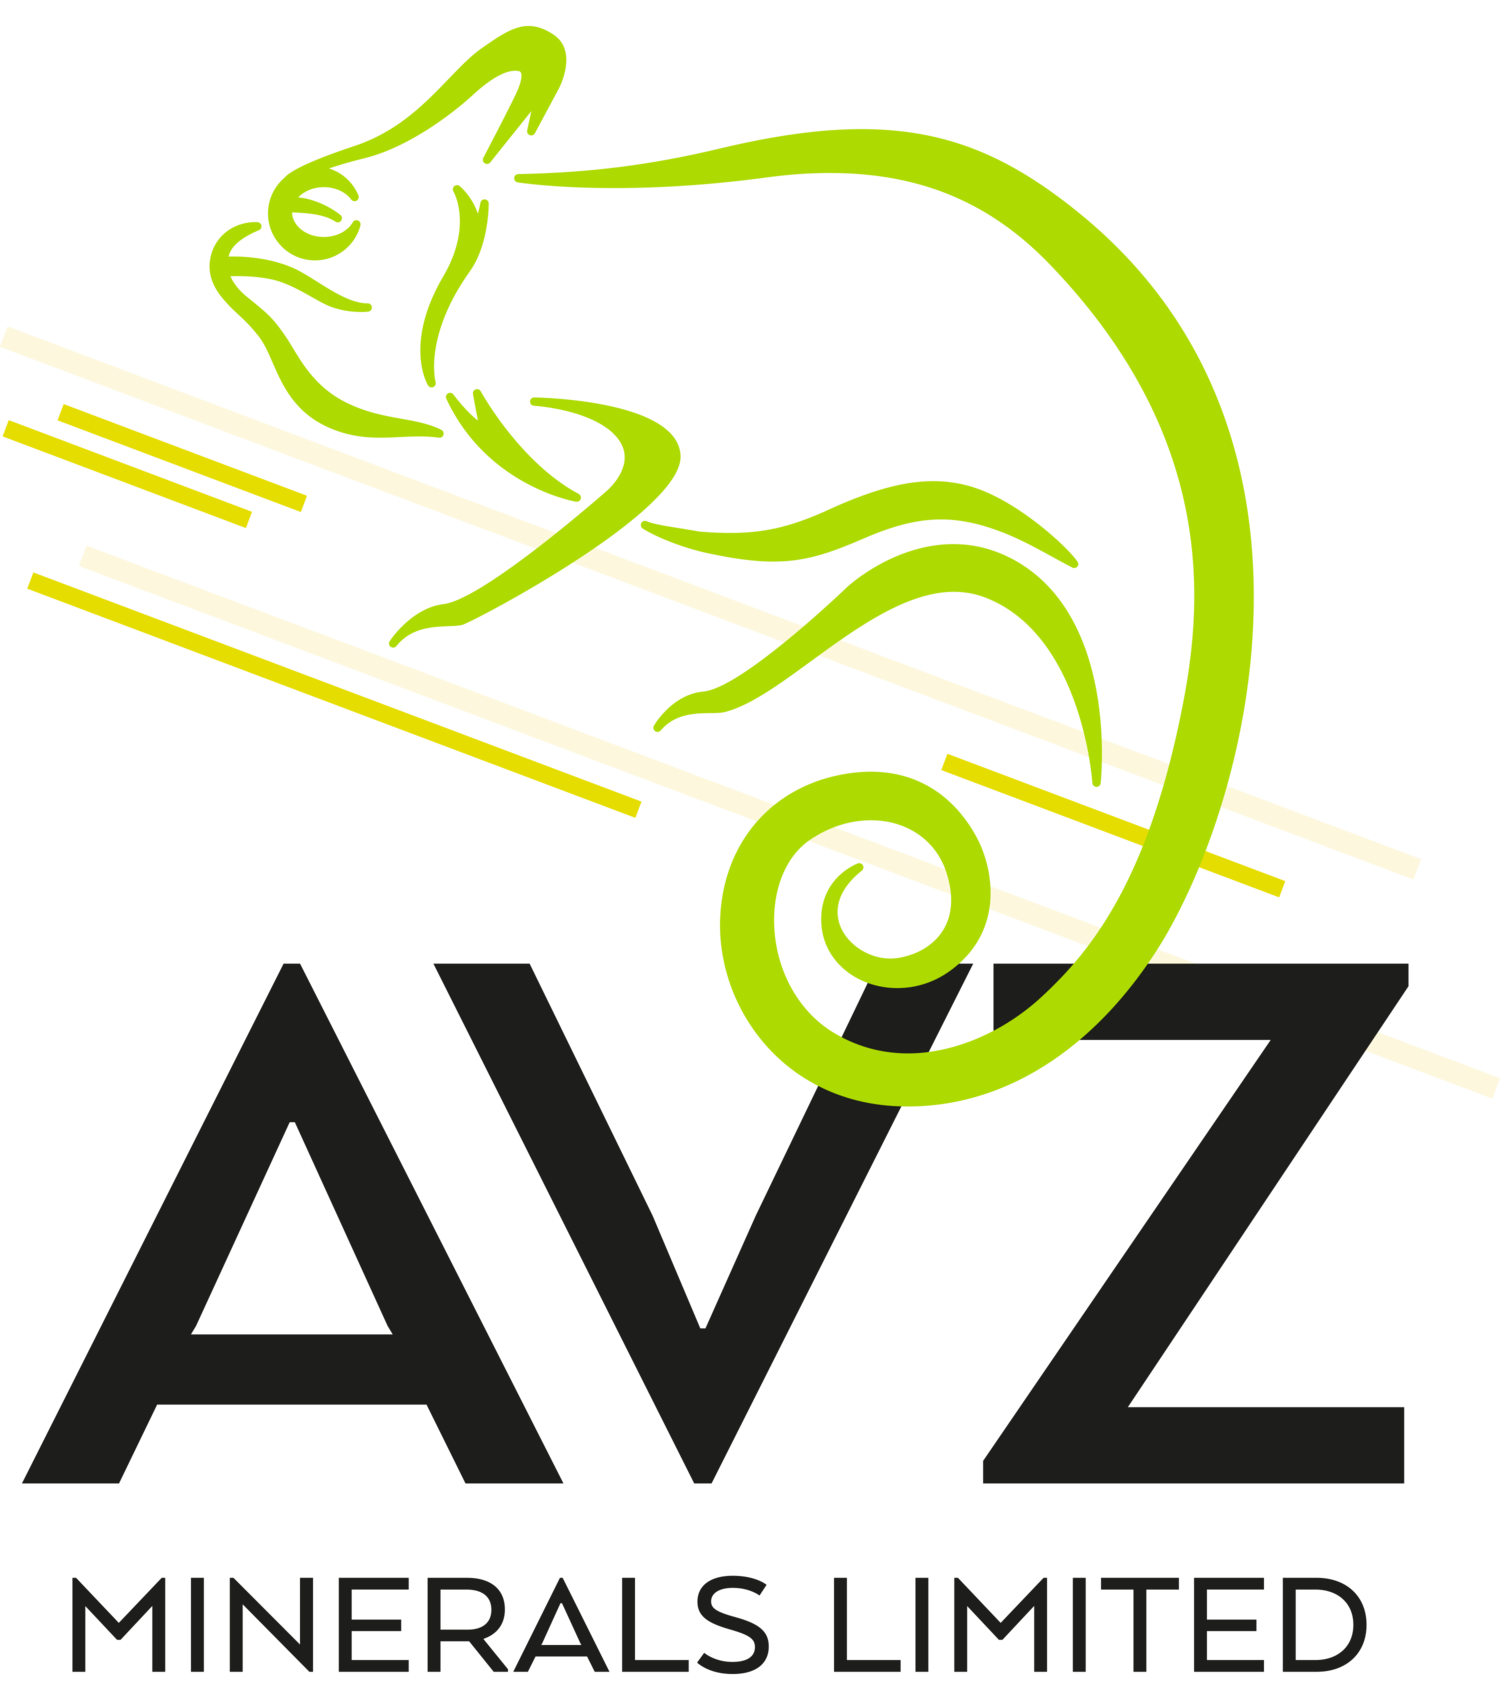 AVZ Minerals Limited